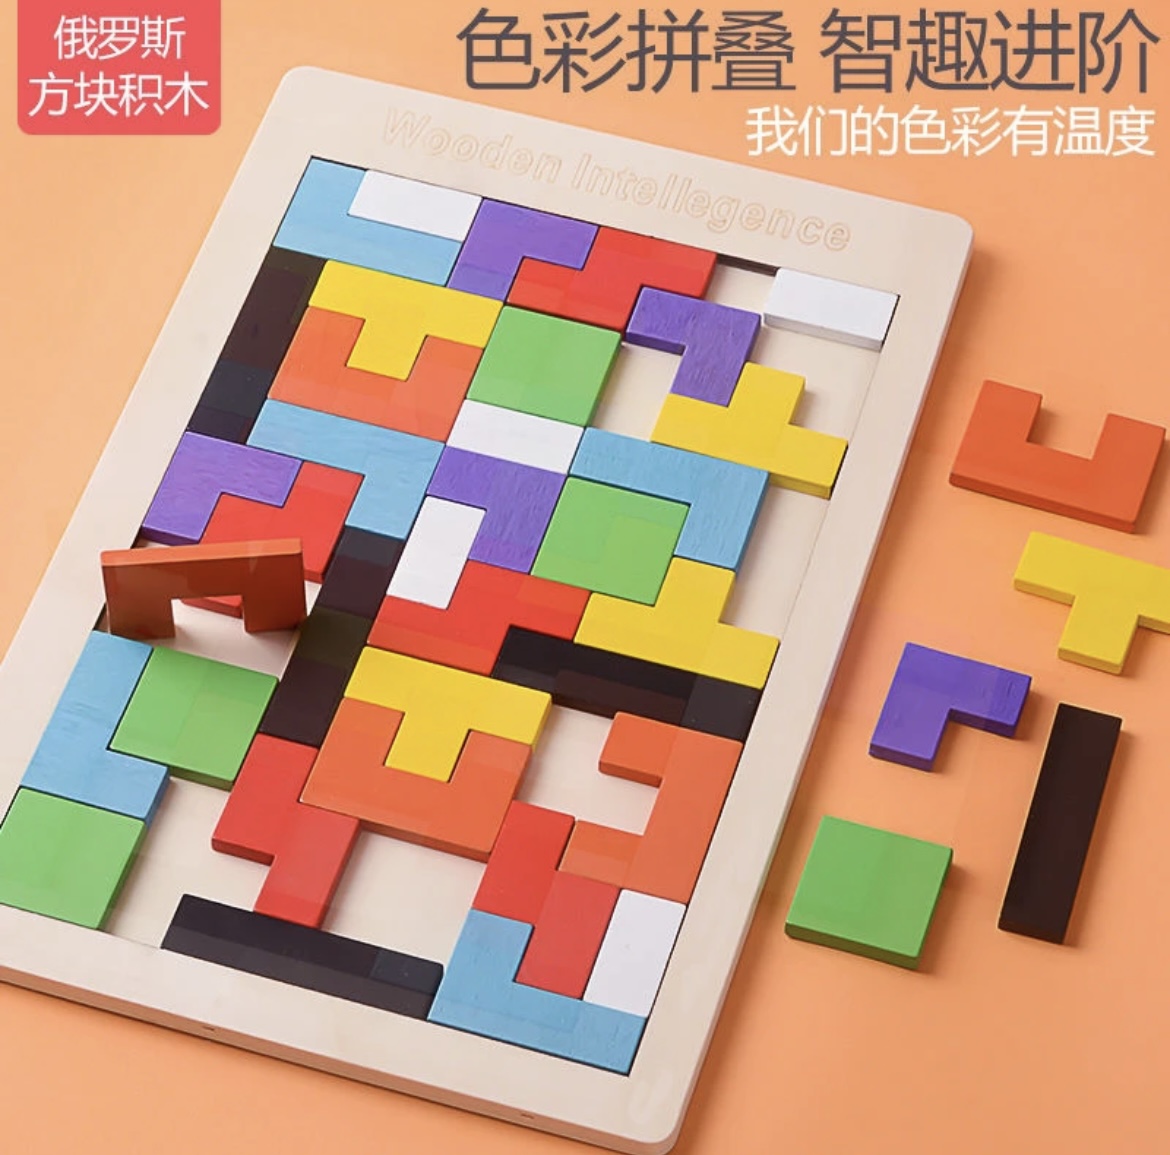 新款儿童小学生七彩方块积木拼图逻辑思维观察力训练益智玩具拼图